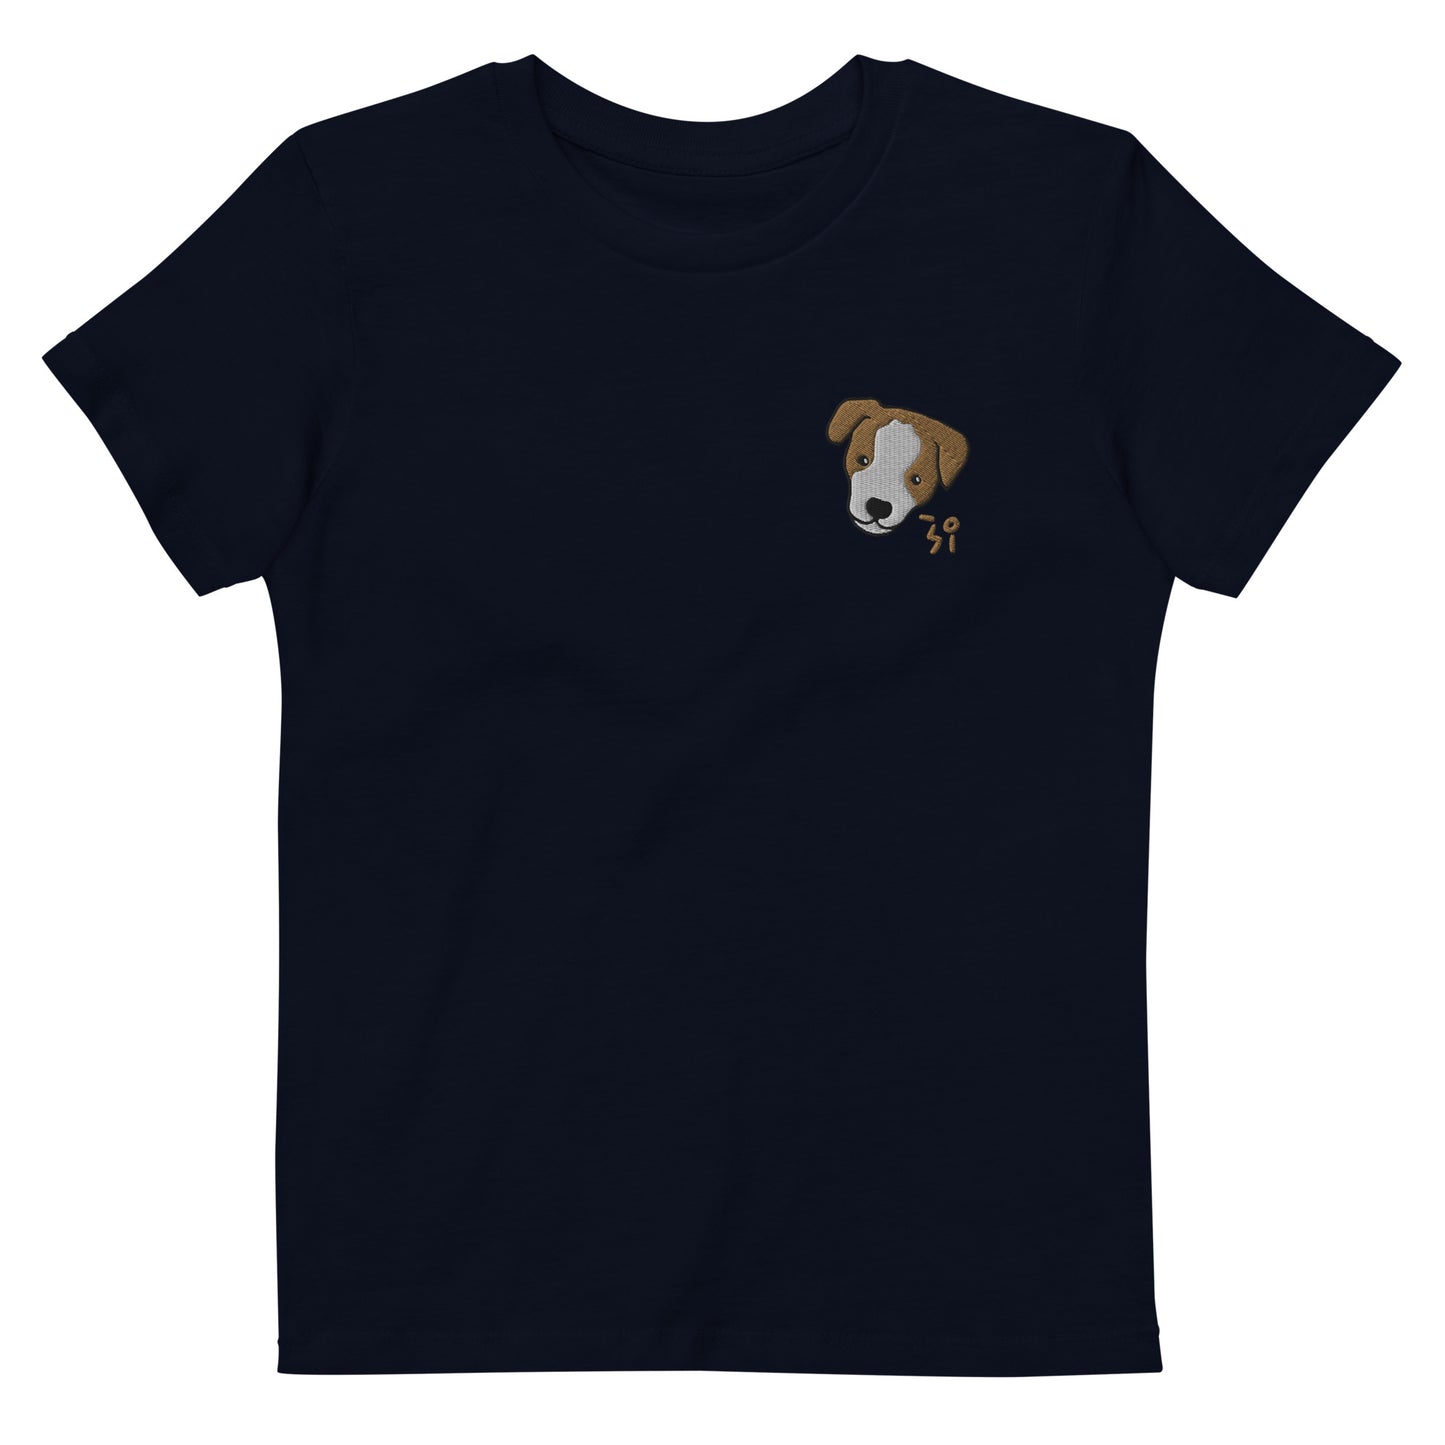 Jack Russell Terrier Organic cotton kids t-shirt